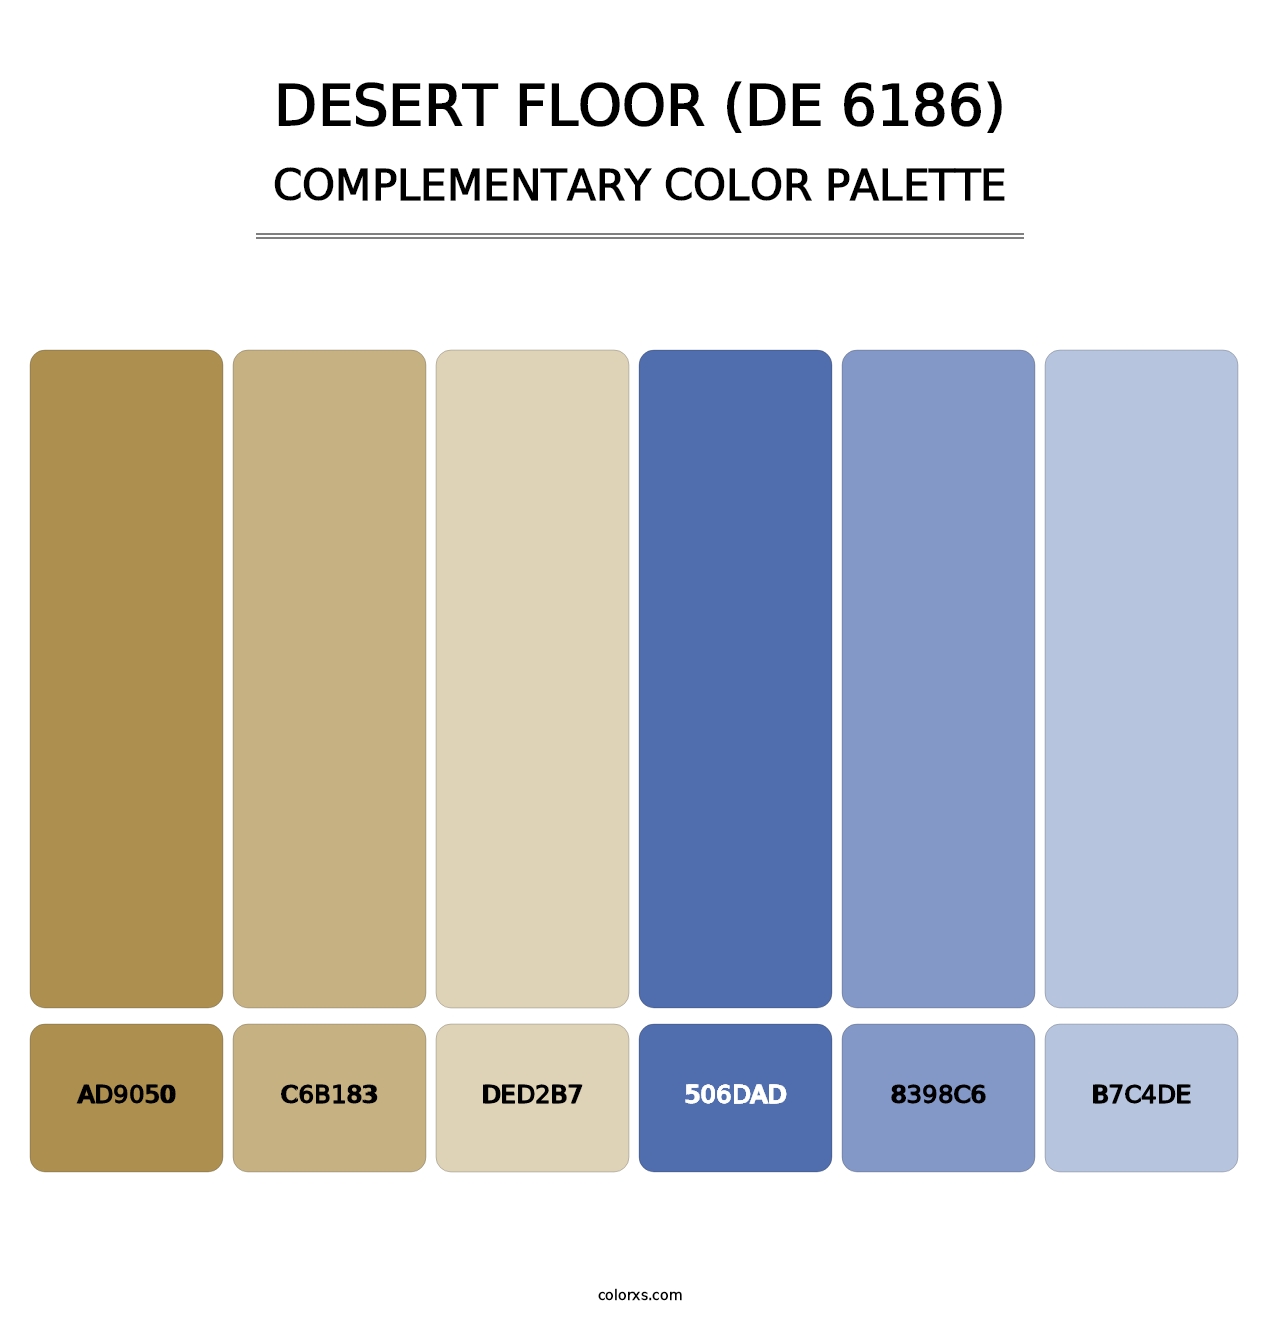 Desert Floor (DE 6186) - Complementary Color Palette